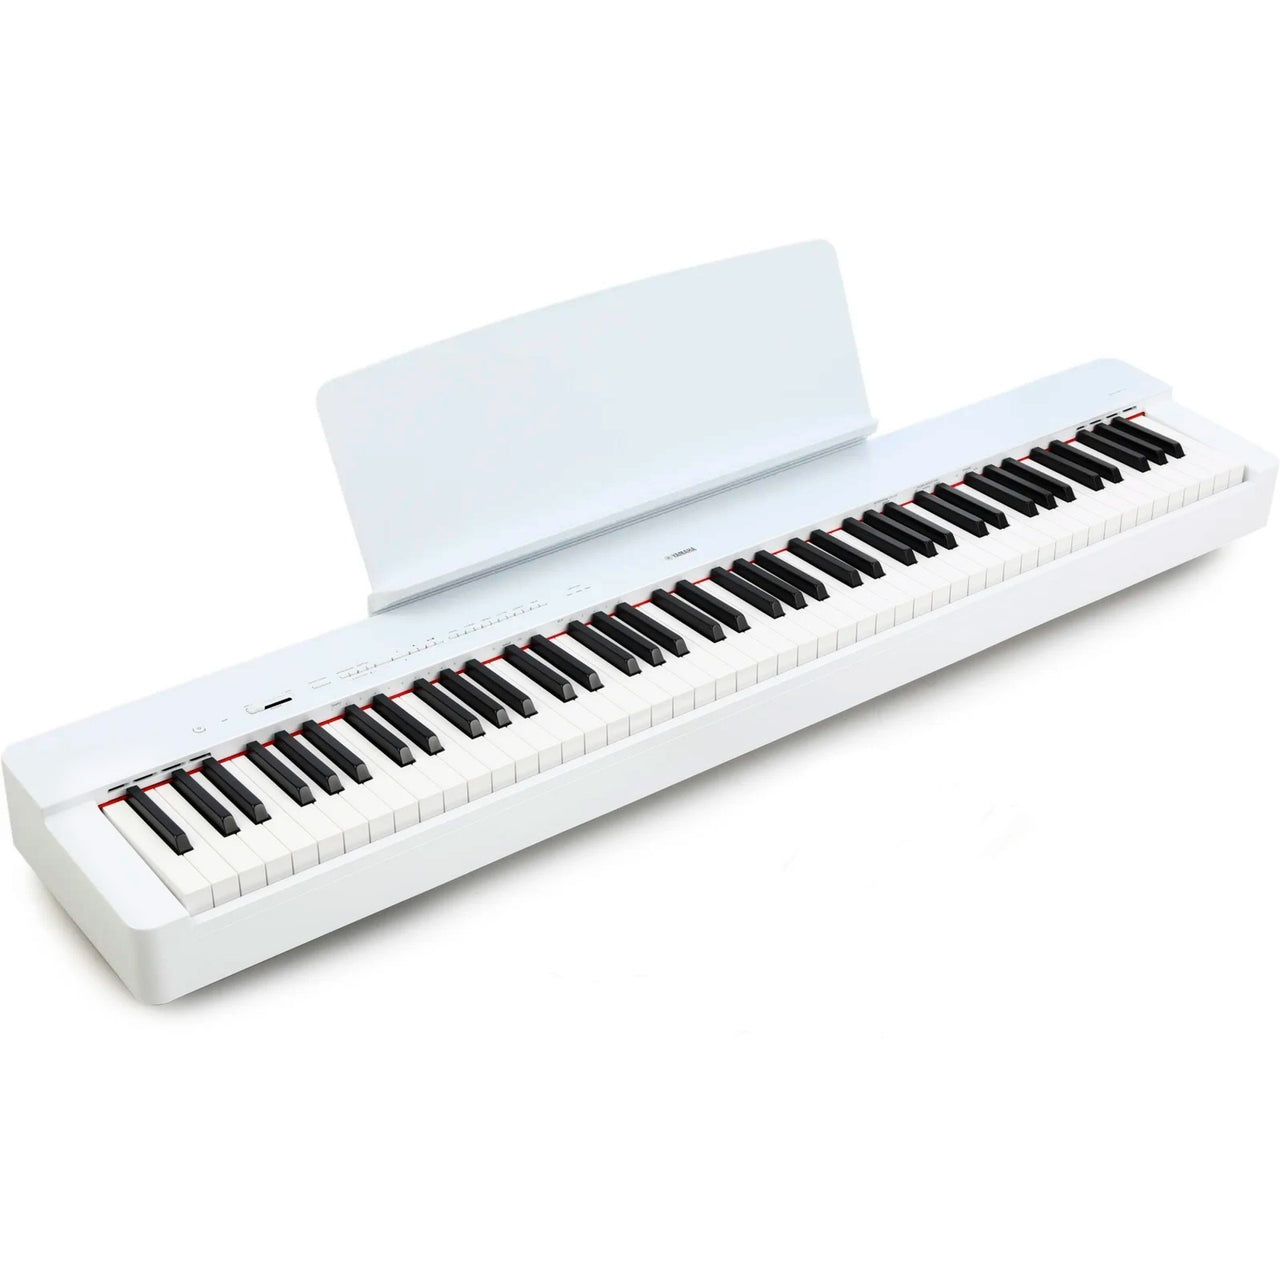 Soporte P/ Organo / Teclado / Piano + Adaptador P/ Notebook